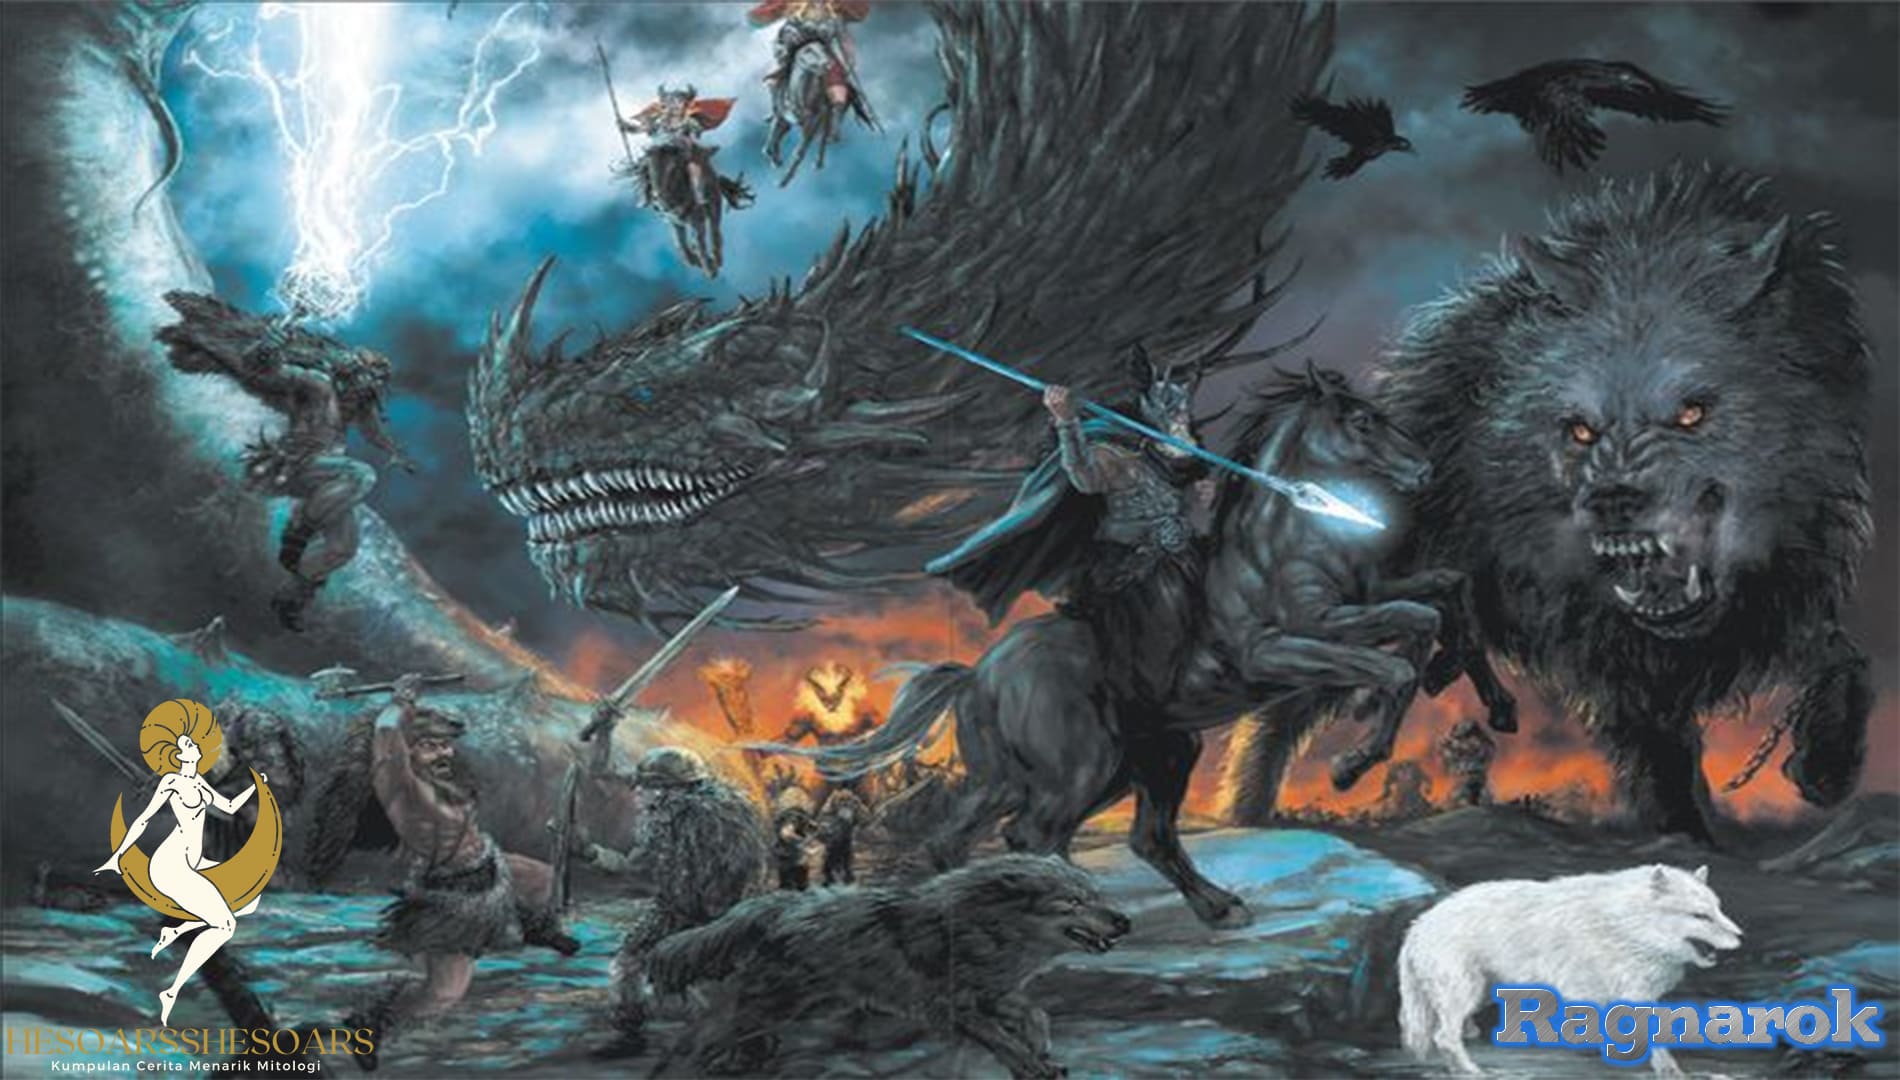 Ragnarok in Norse Mythology: The Epic Cosmic Apocalypse